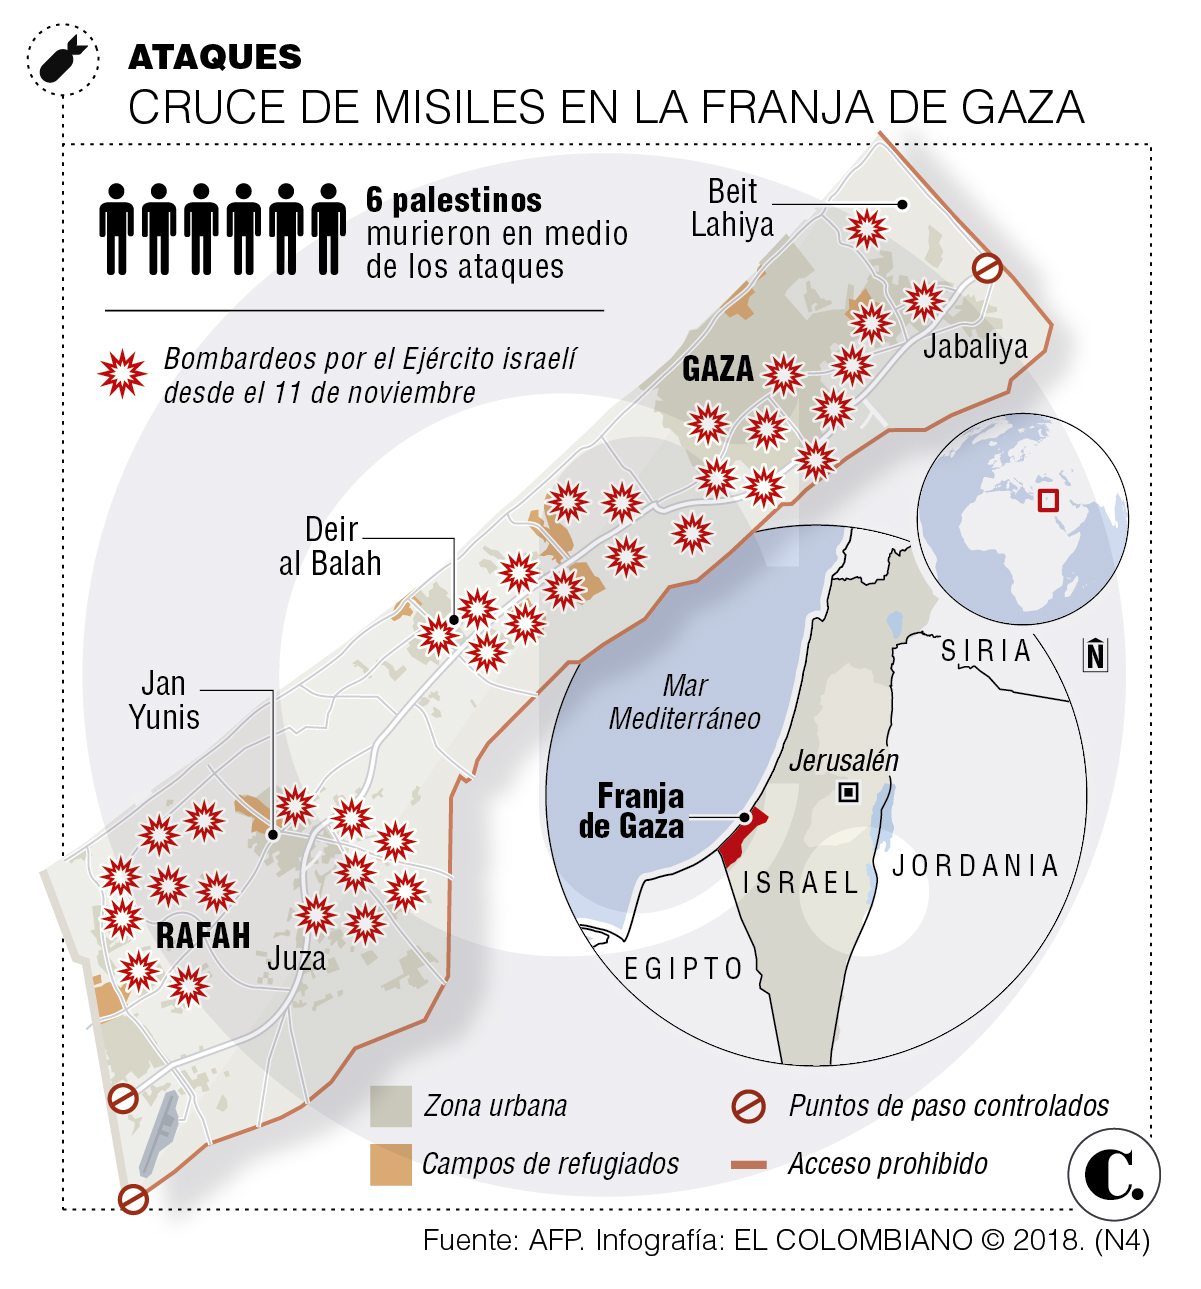 La guerra asimétrica que golpea la Franja de Gaza